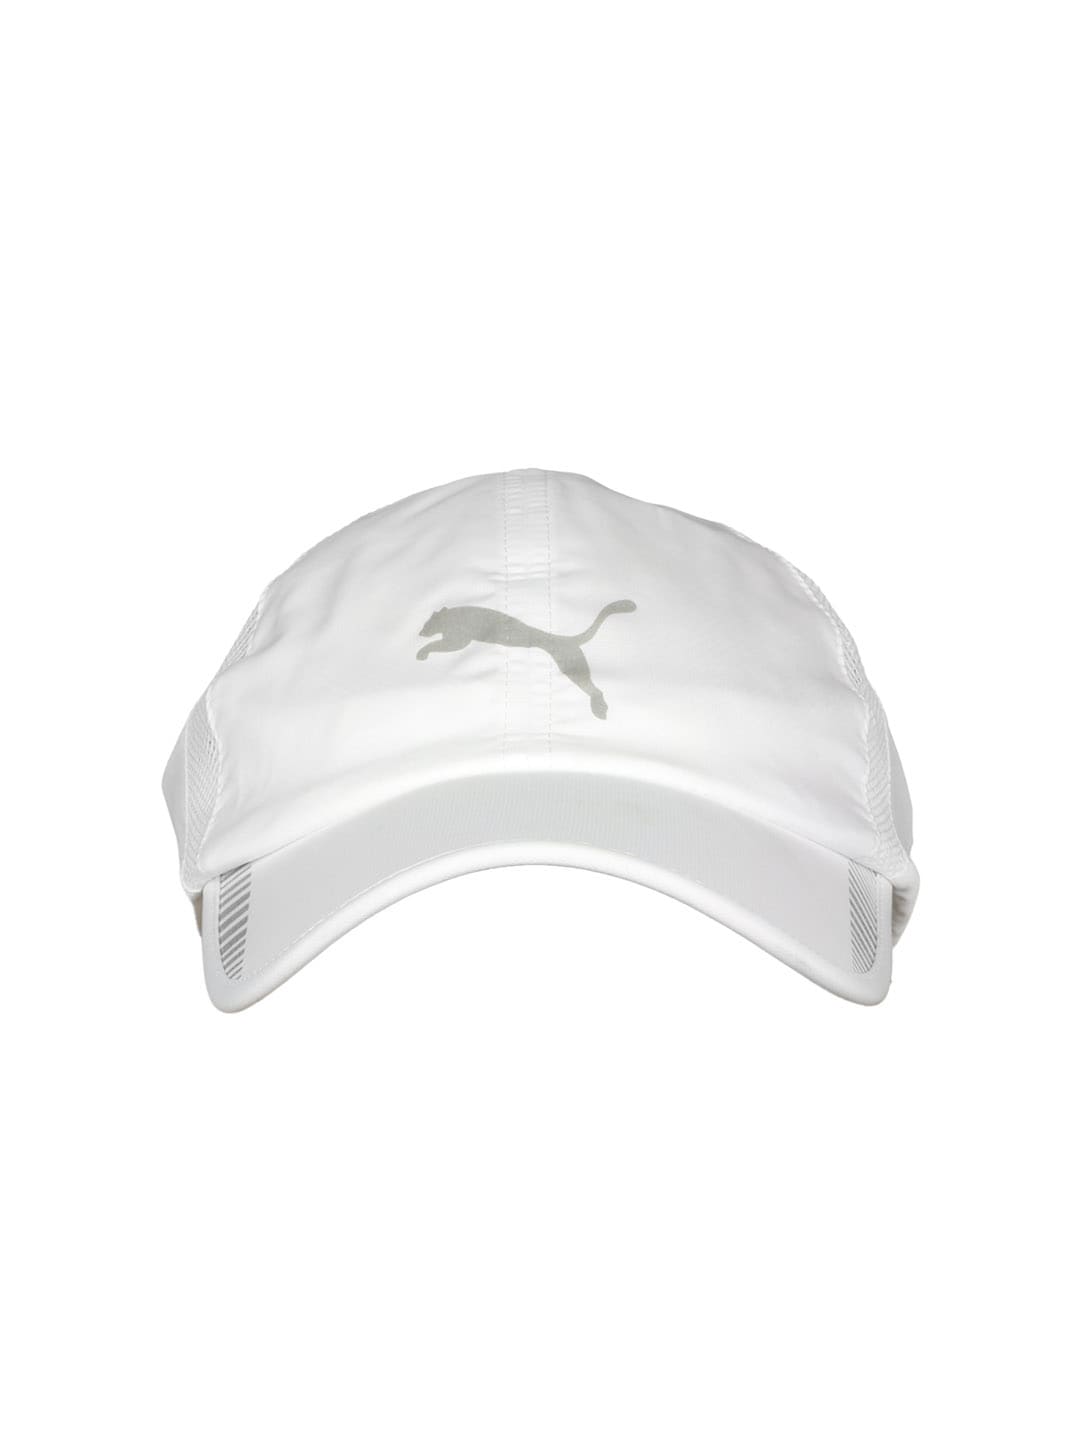 Puma Unisex White Cap